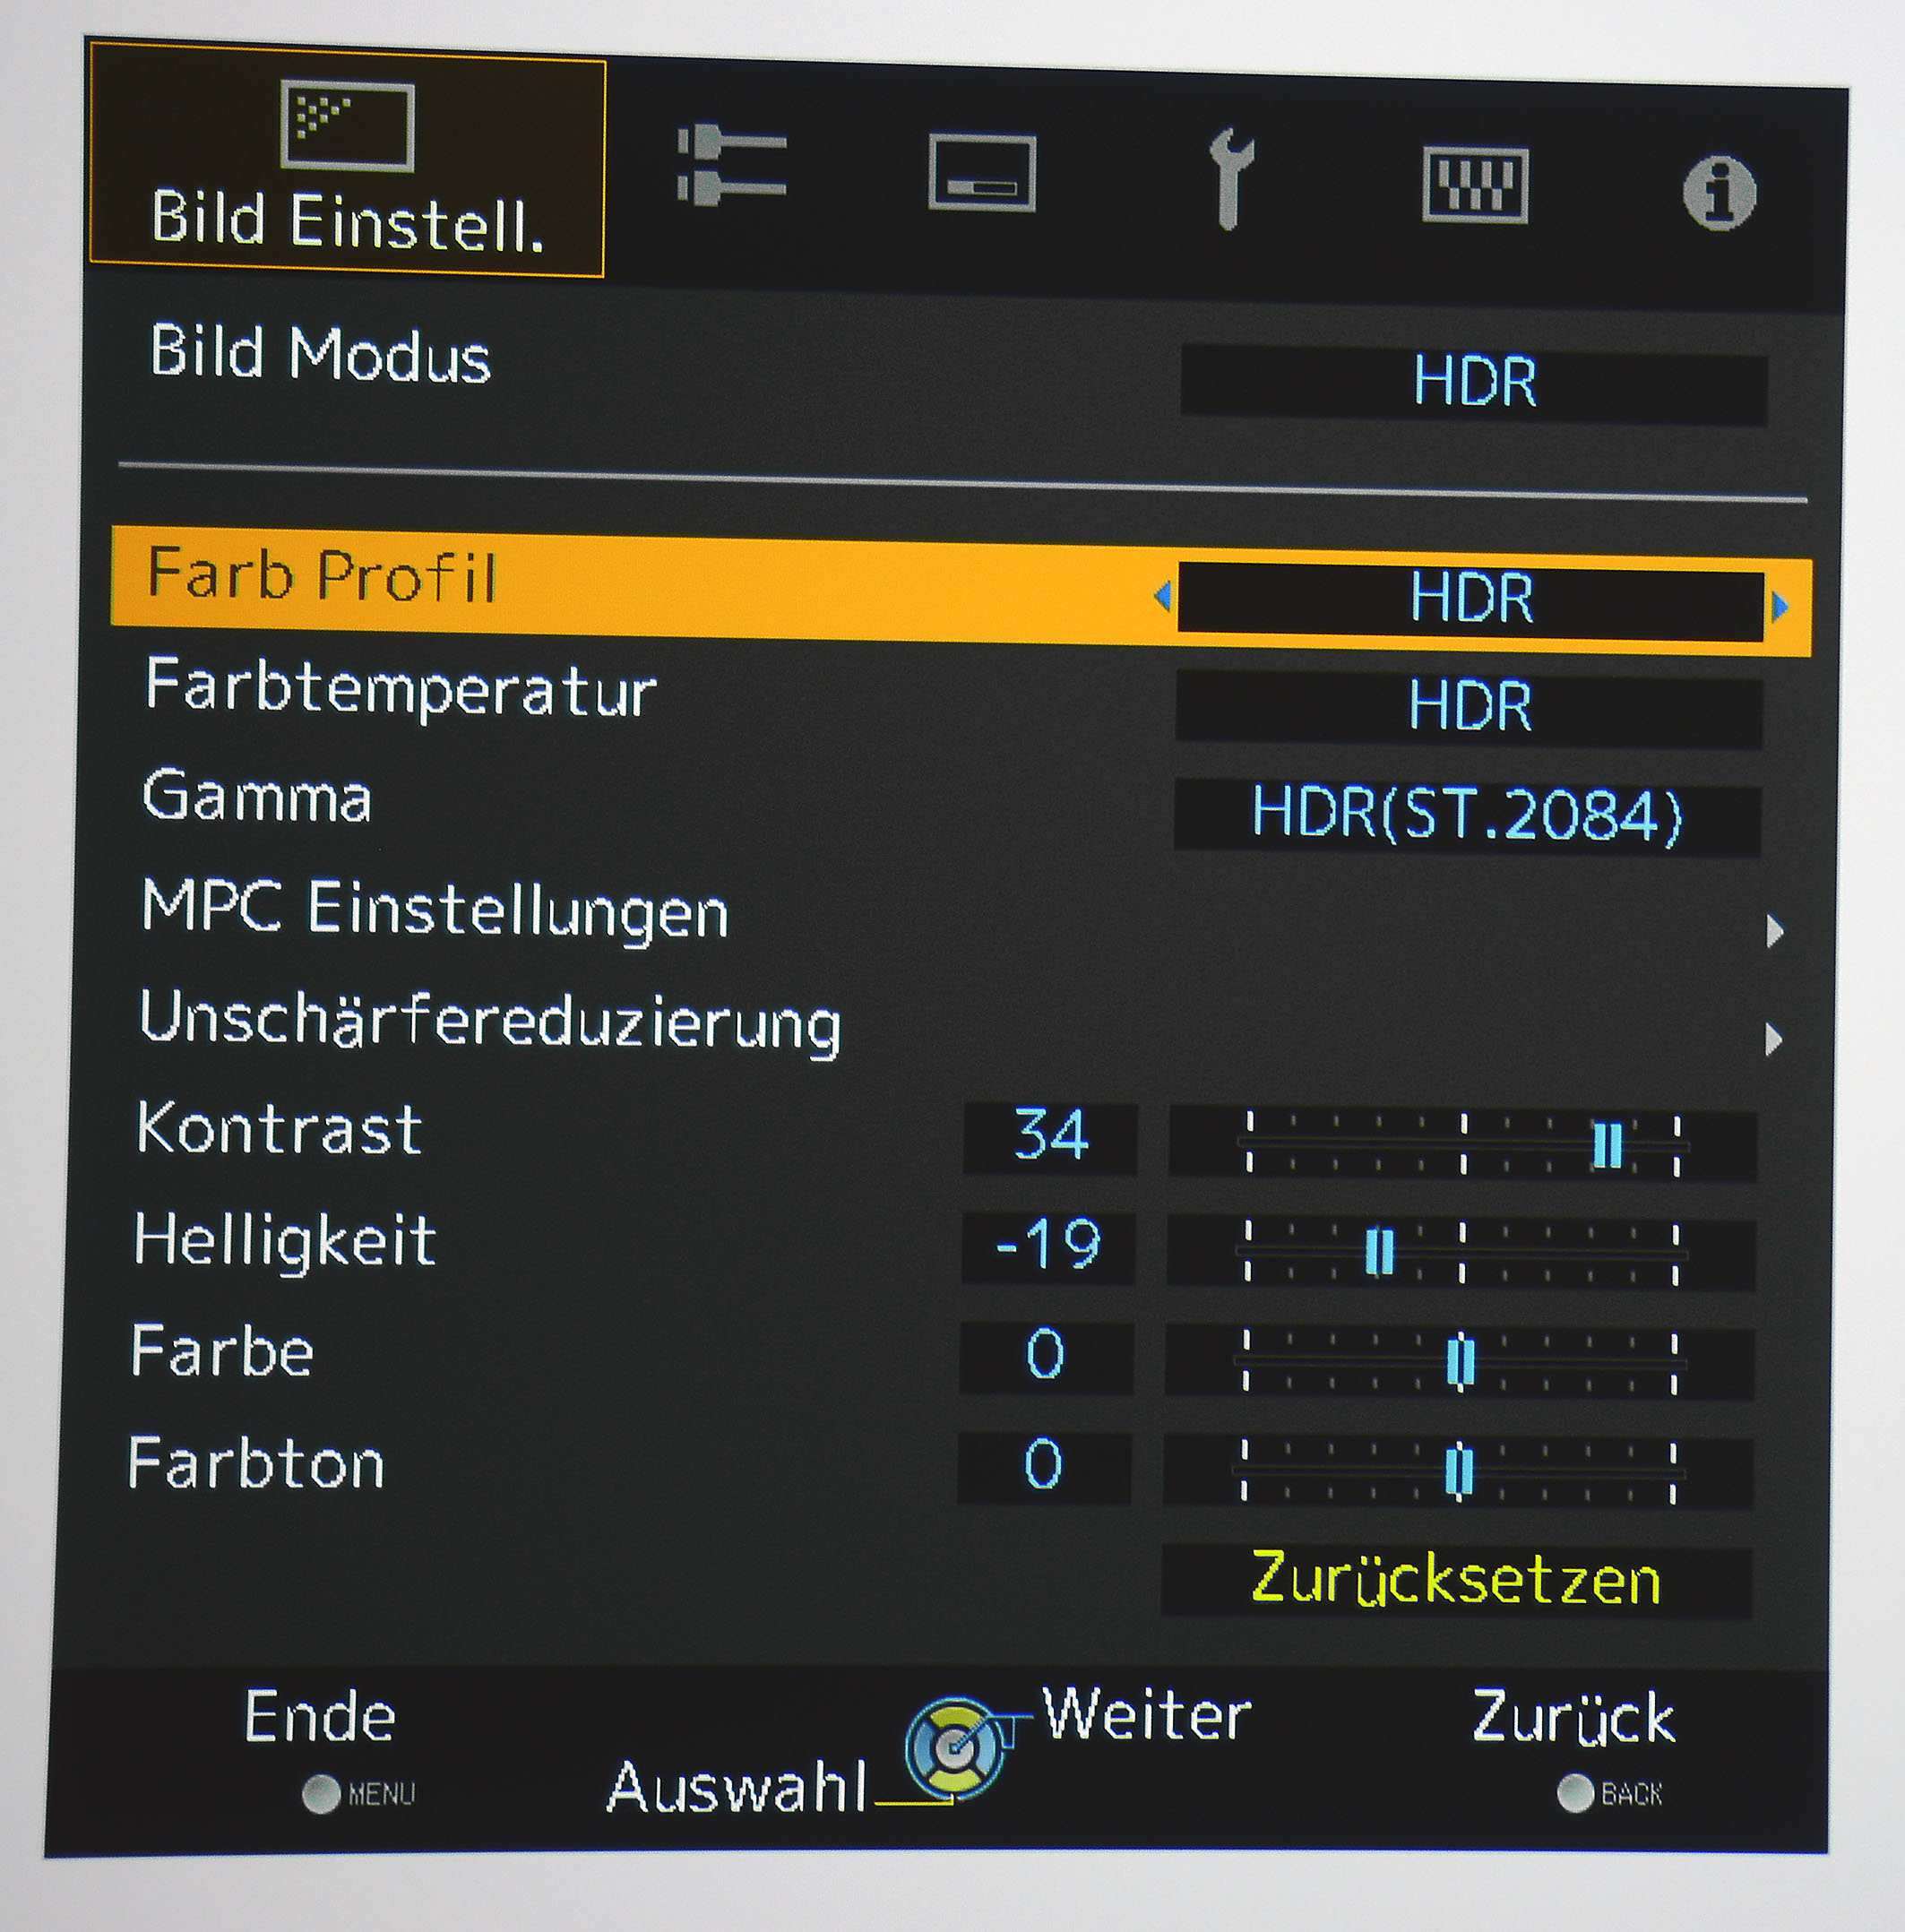 HDR: Das Farbprofil „HDR“ ist ab Werk eingestellt.